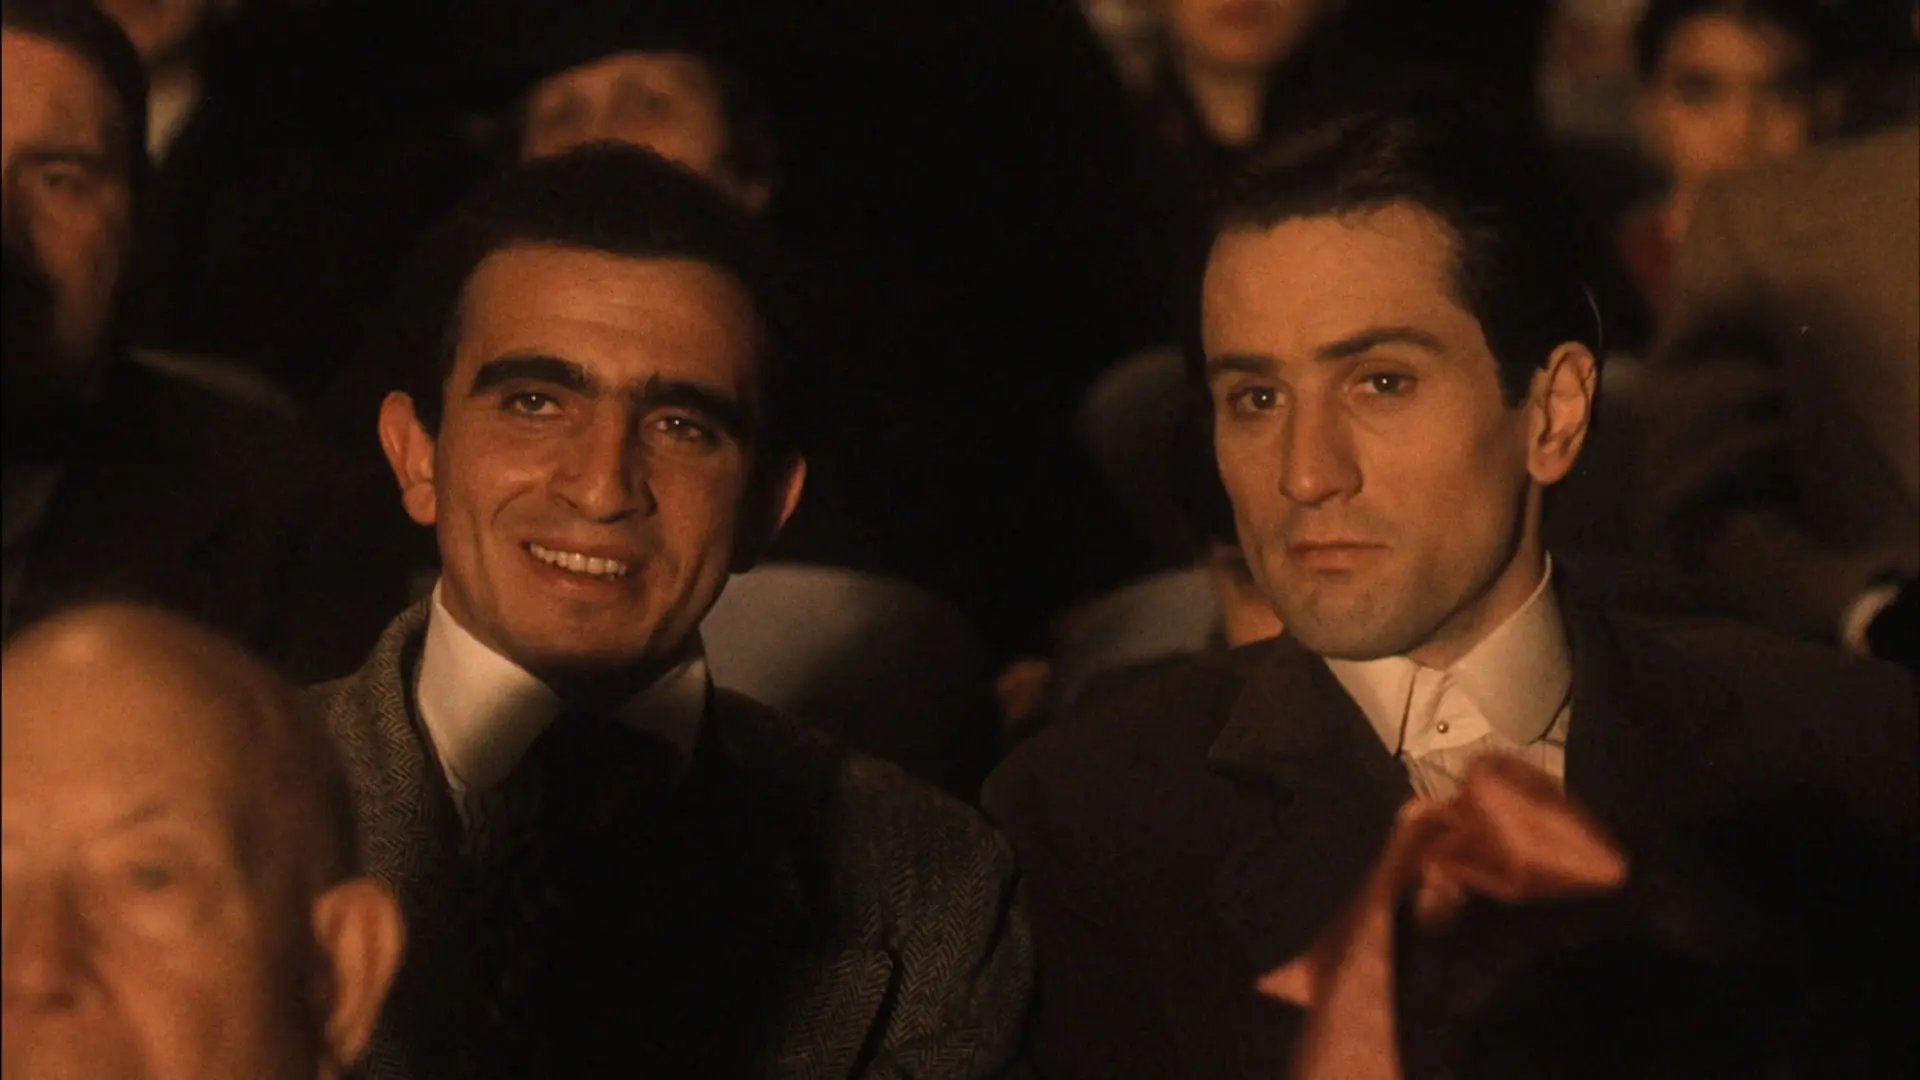 The Godfather II (1974)